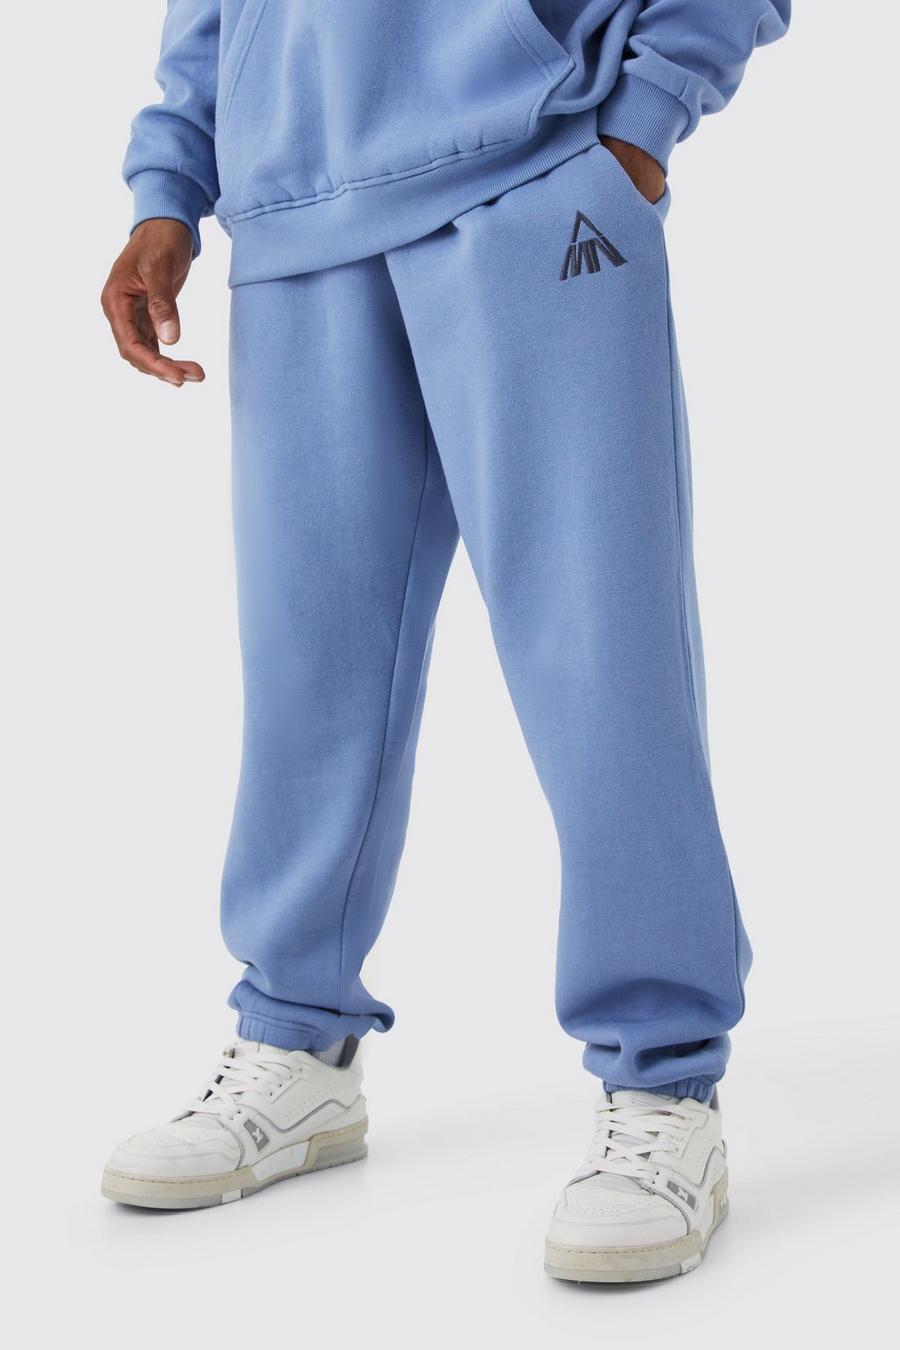 Pantaloni tuta Man oversize Basic, Dusty blue